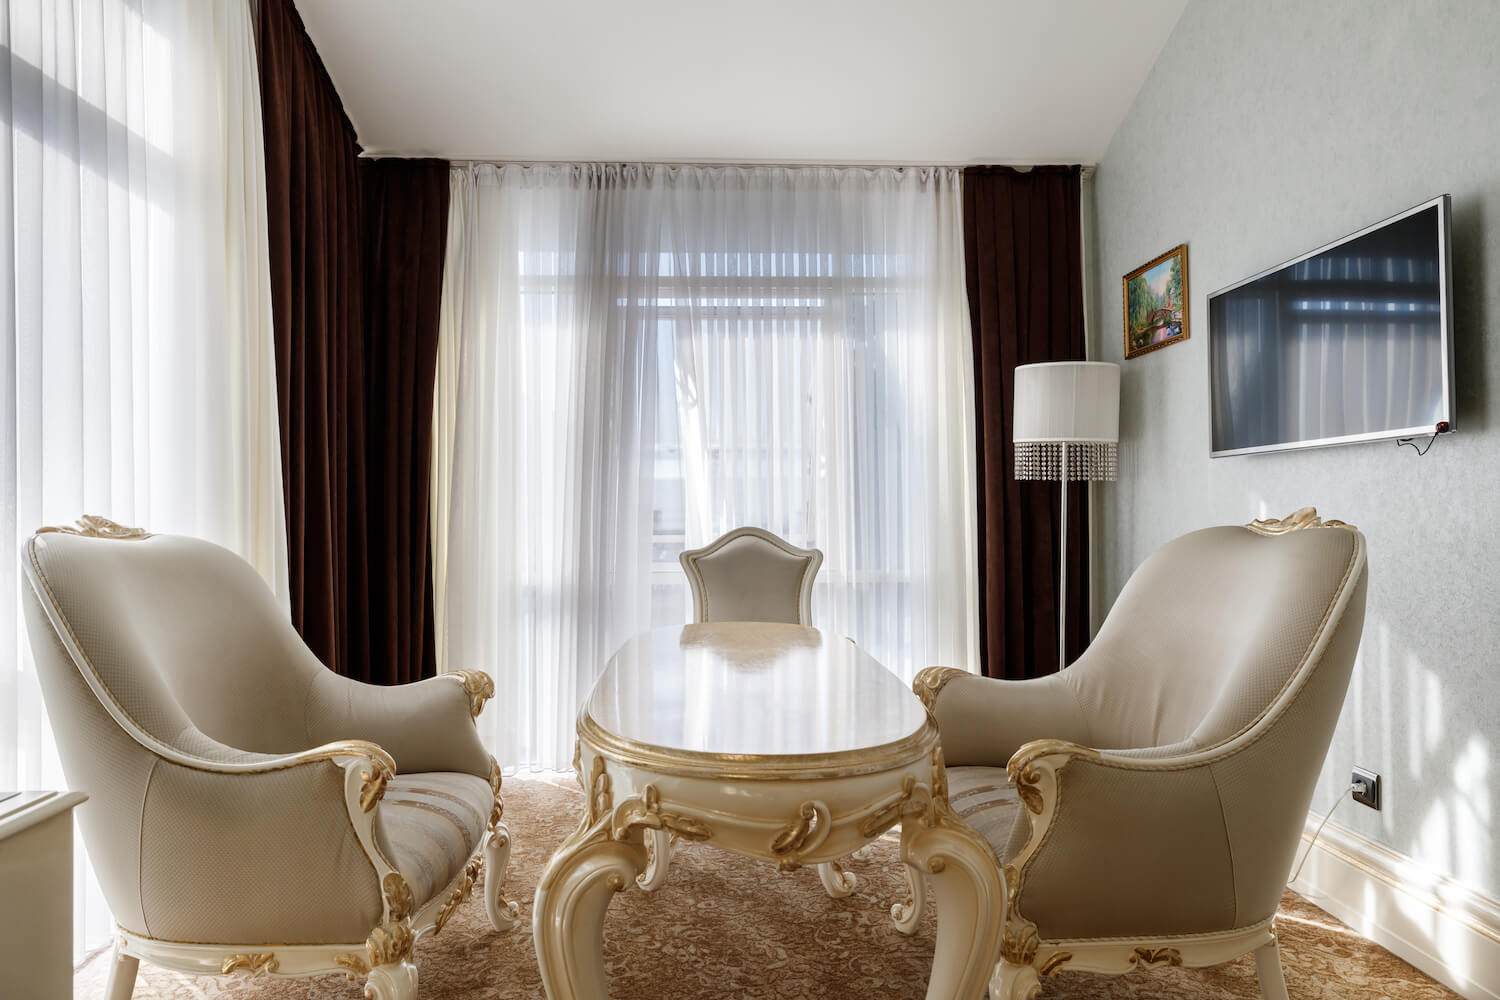 Fidan Spa Hotel Sochi. Роскошные отели в Сочи. Отель фидан сочи